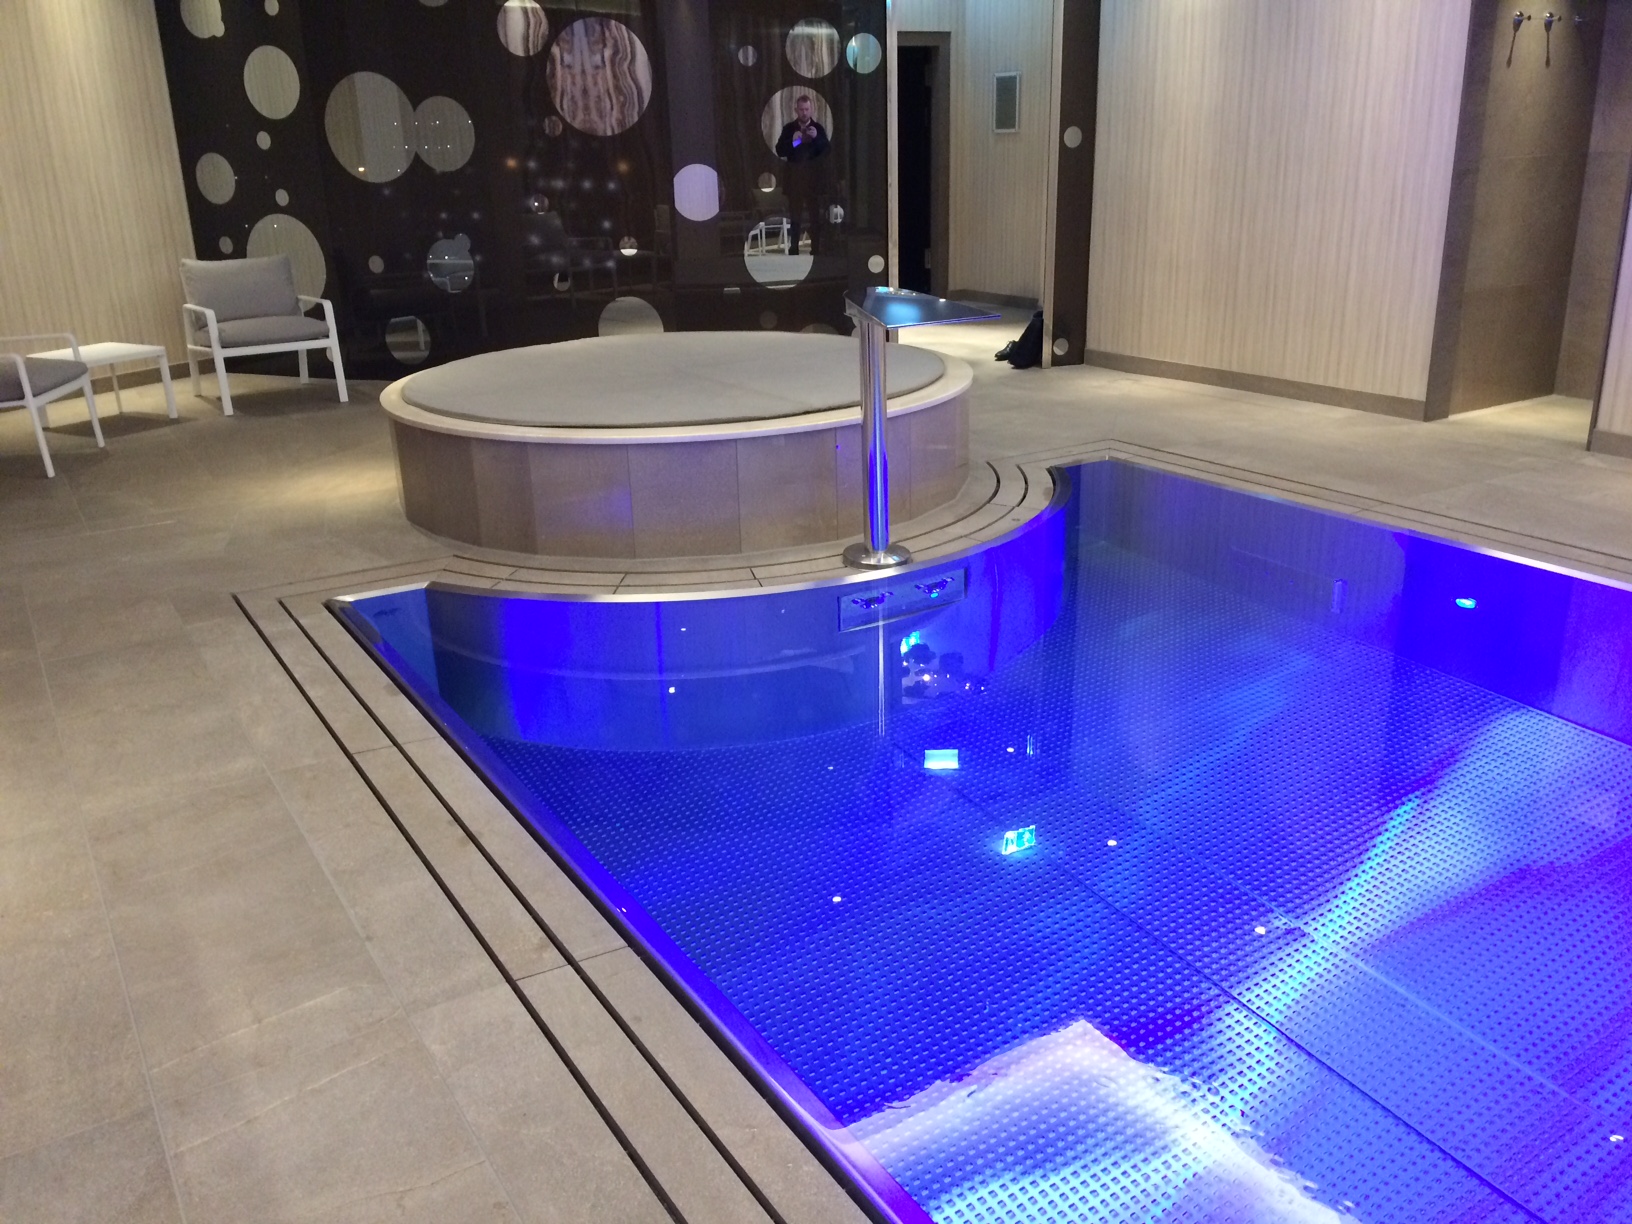 Hotel stainless-steel IMAGINOX pool in luxury wellness